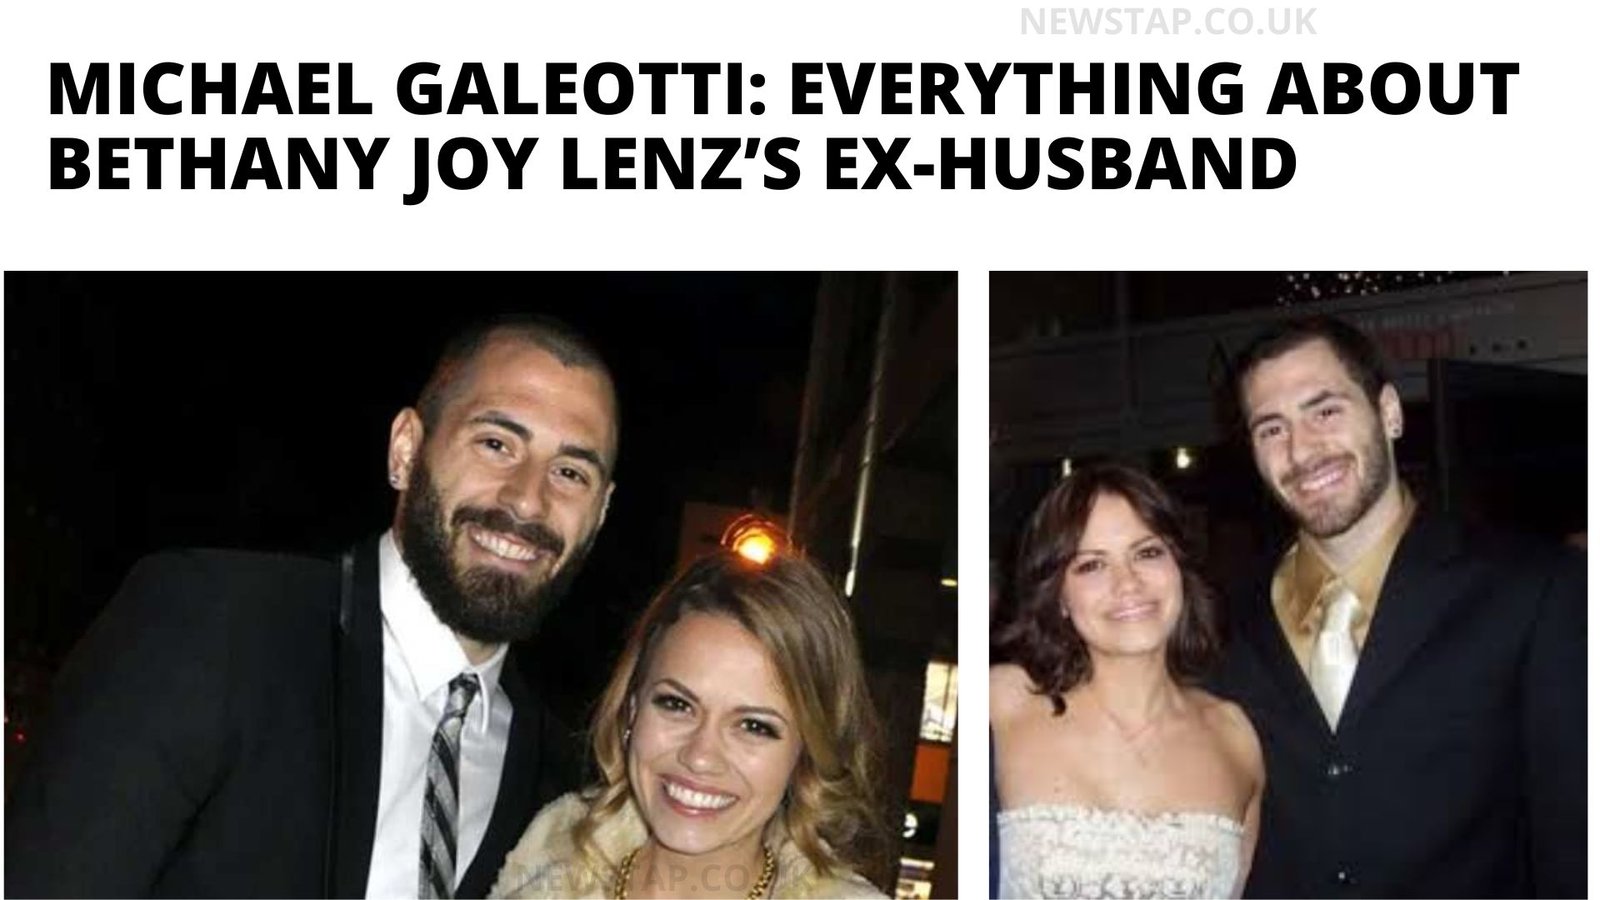 Michael Galeotti: Everything About Bethany Joy Lenz’s Ex-husband - newstap.co.uk